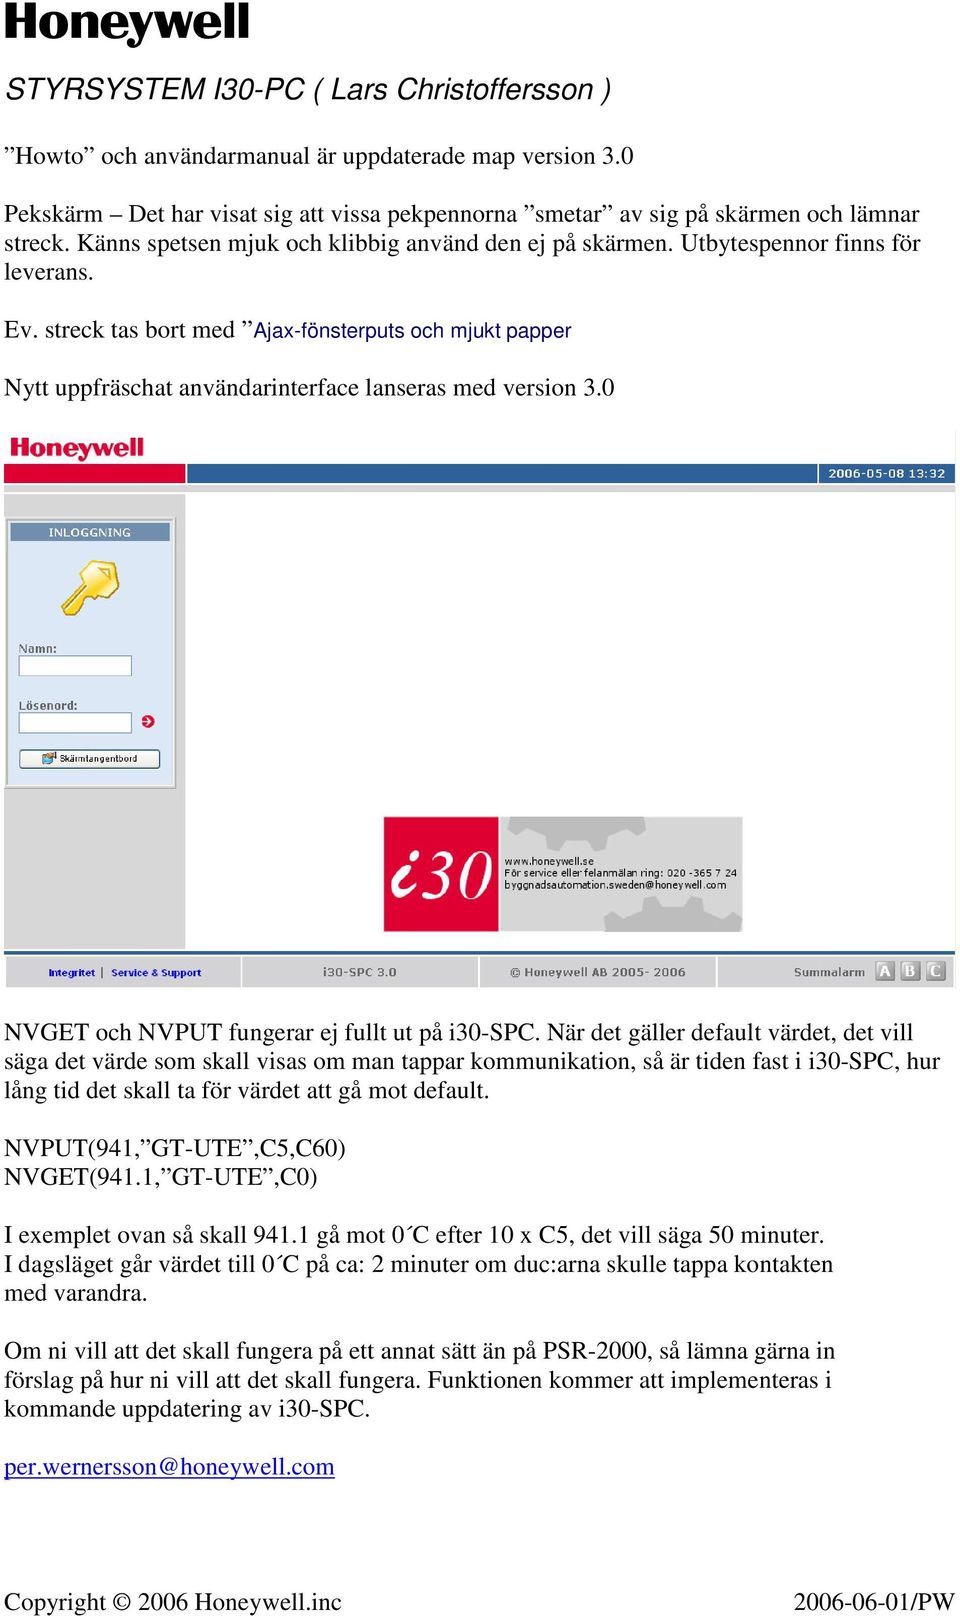 streck tas bort med Ajax-fönsterputs och mjukt papper Nytt uppfräschat användarinterface lanseras med version 3.0 NVGET och NVPUT fungerar ej fullt ut på i30-spc.